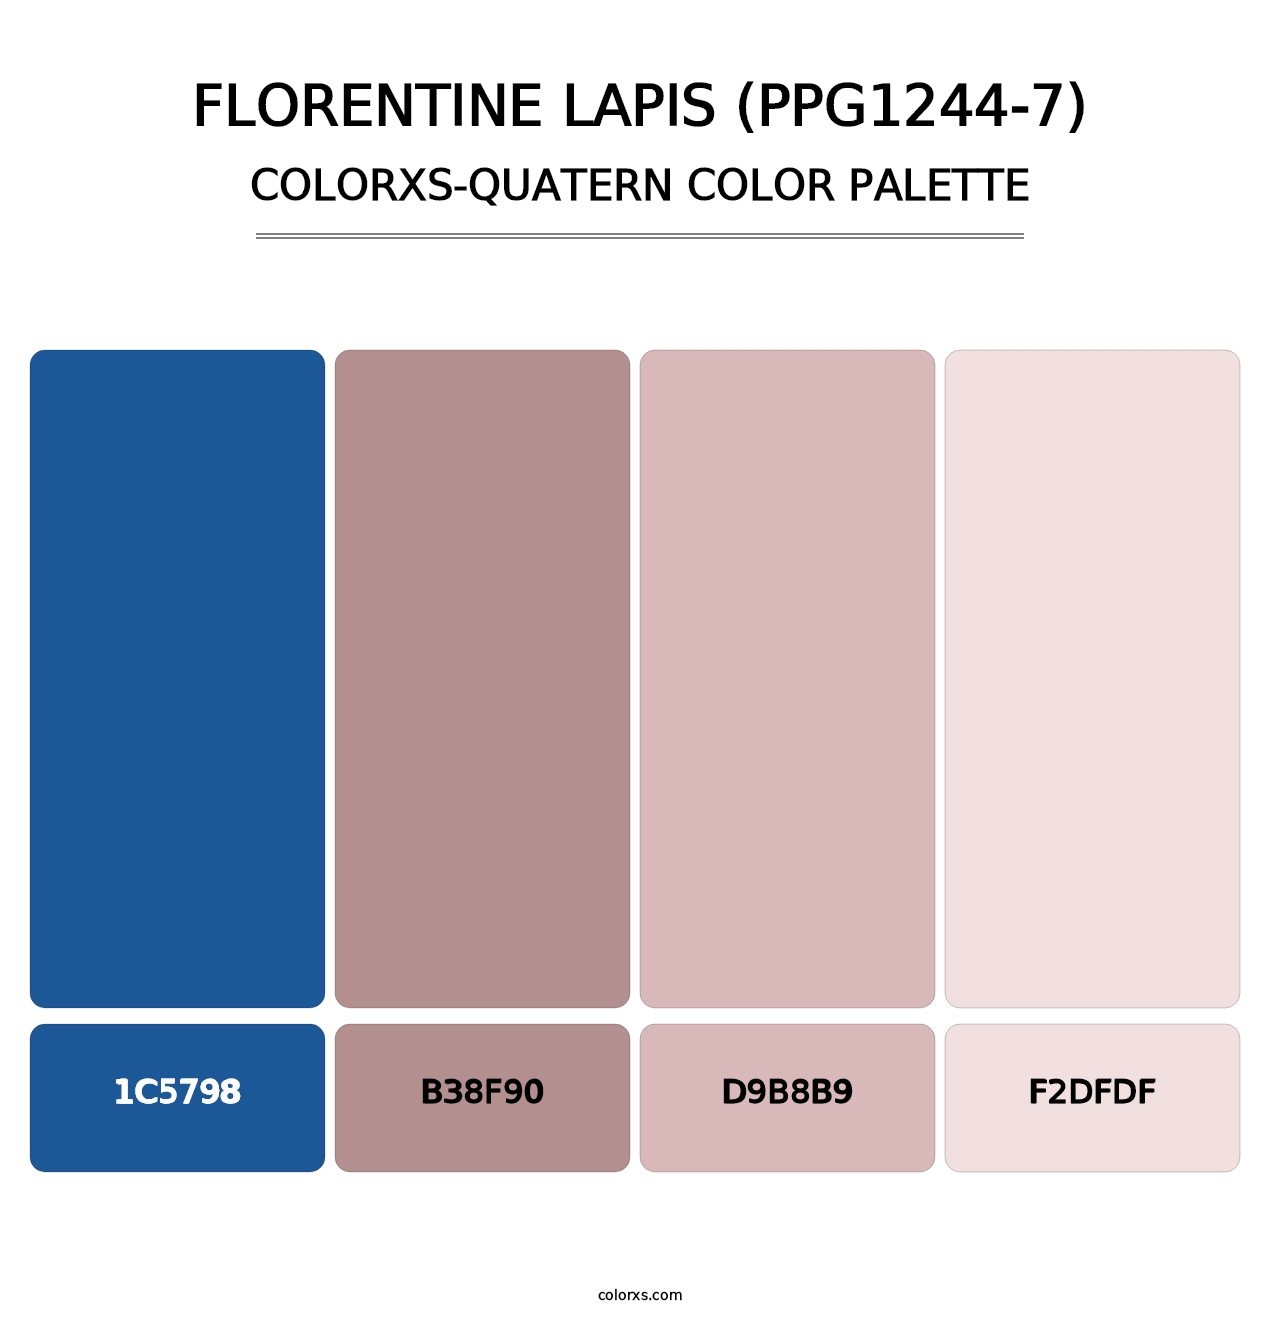 Florentine Lapis (PPG1244-7) - Colorxs Quatern Palette